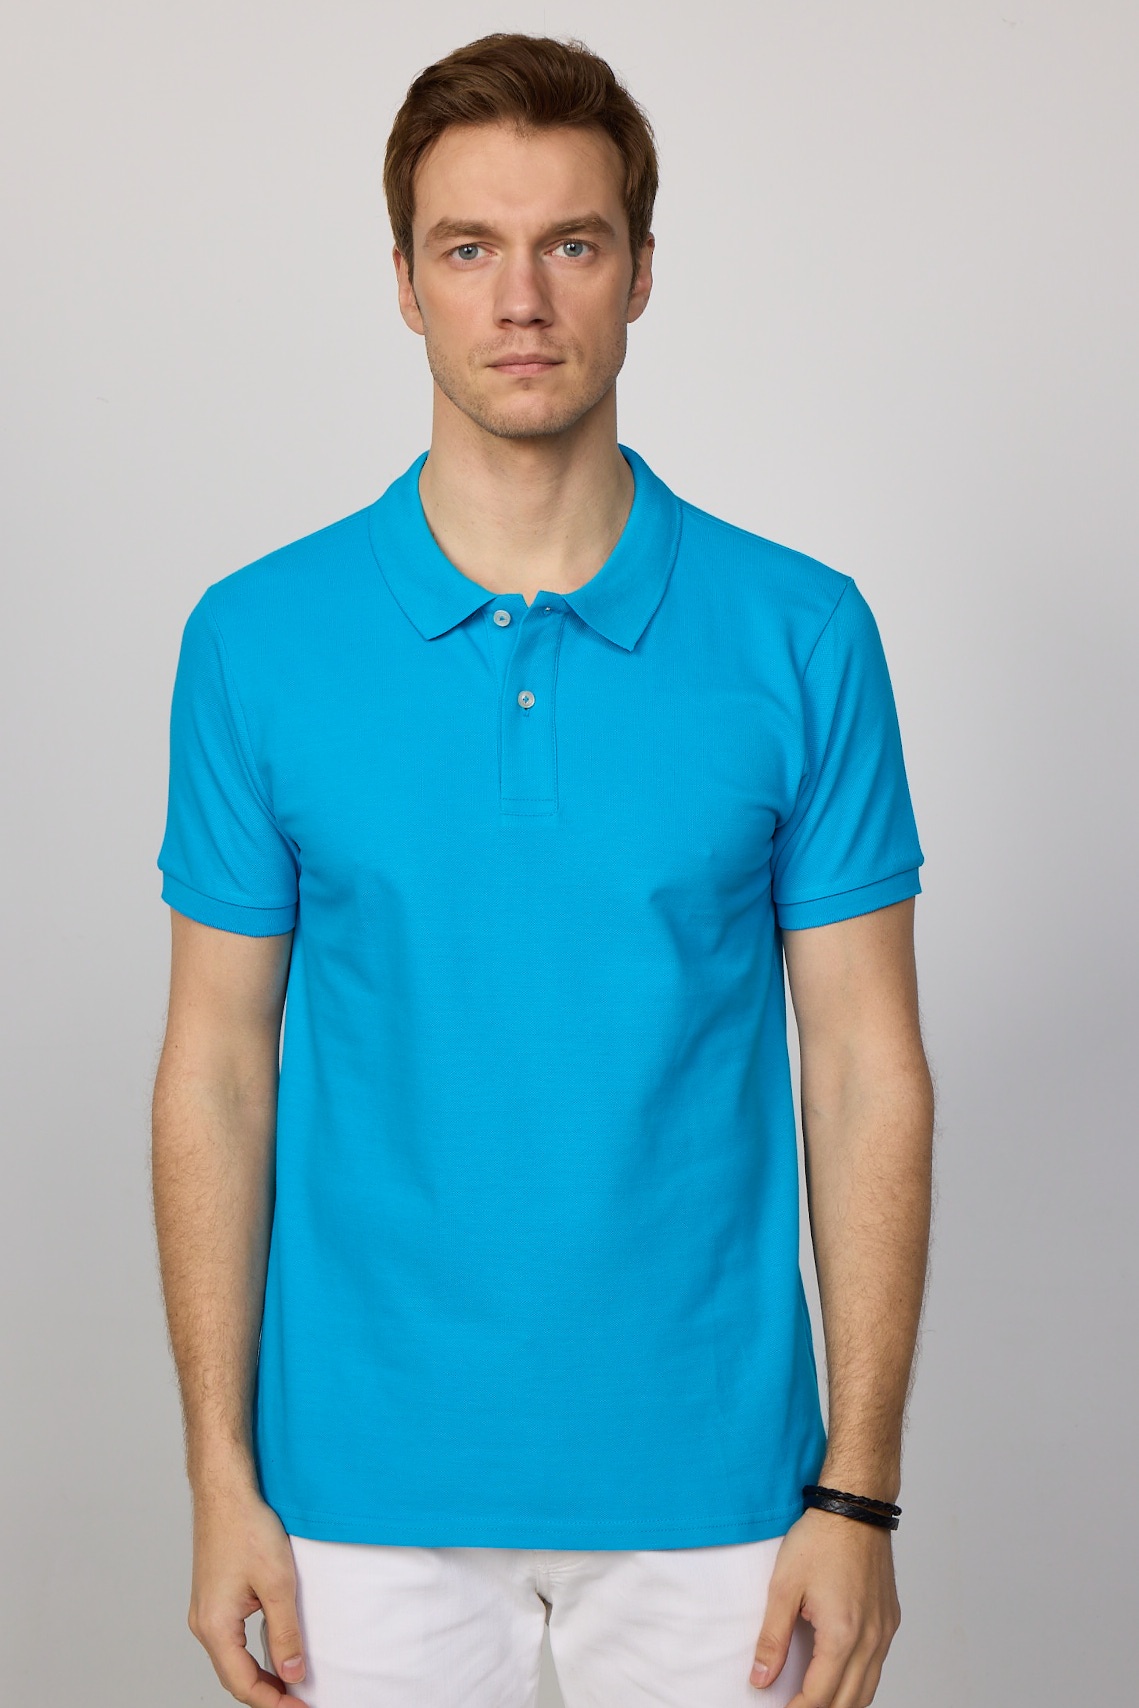 Élénk kék színű slim fit galléros férfi póló